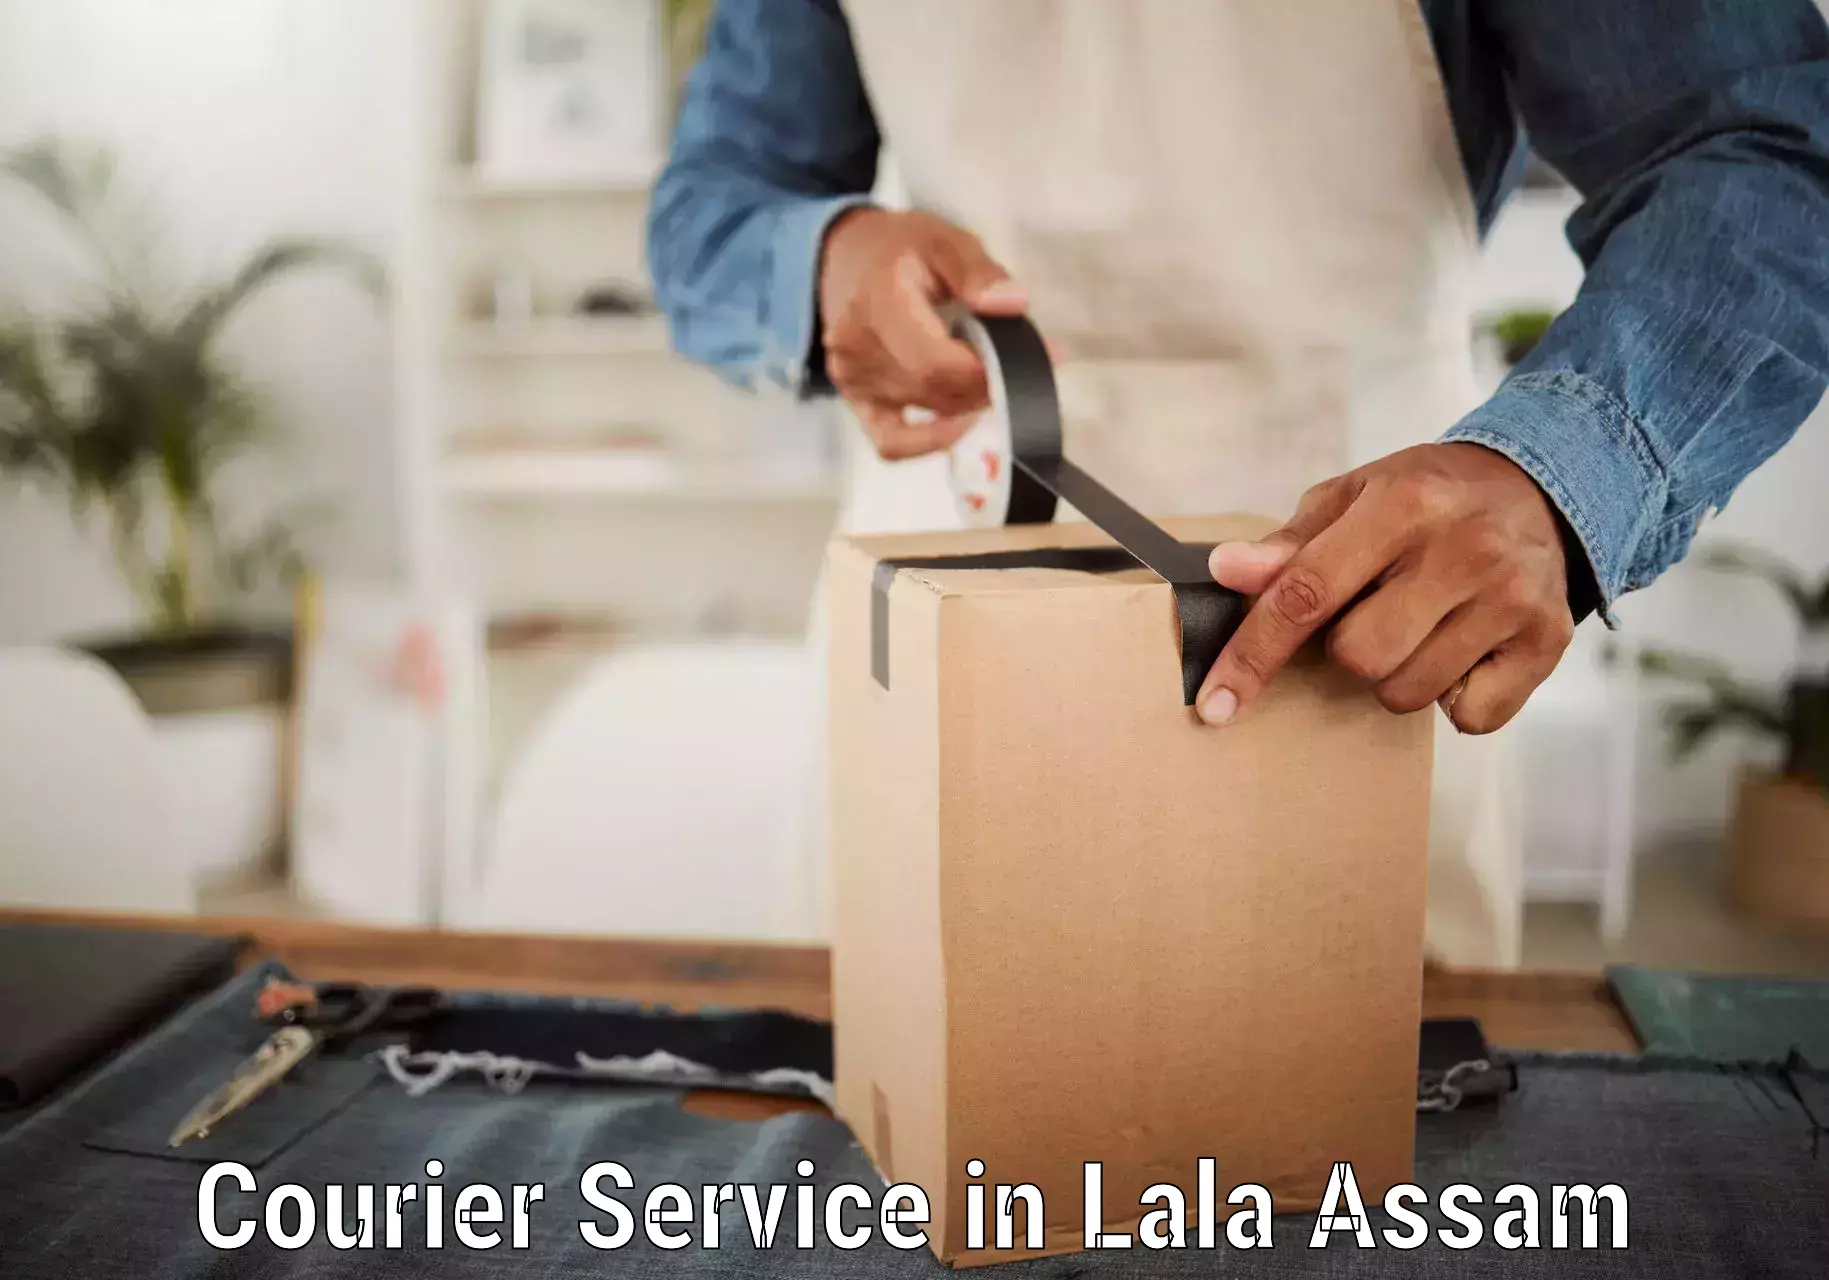 Affordable parcel service in Lala Assam